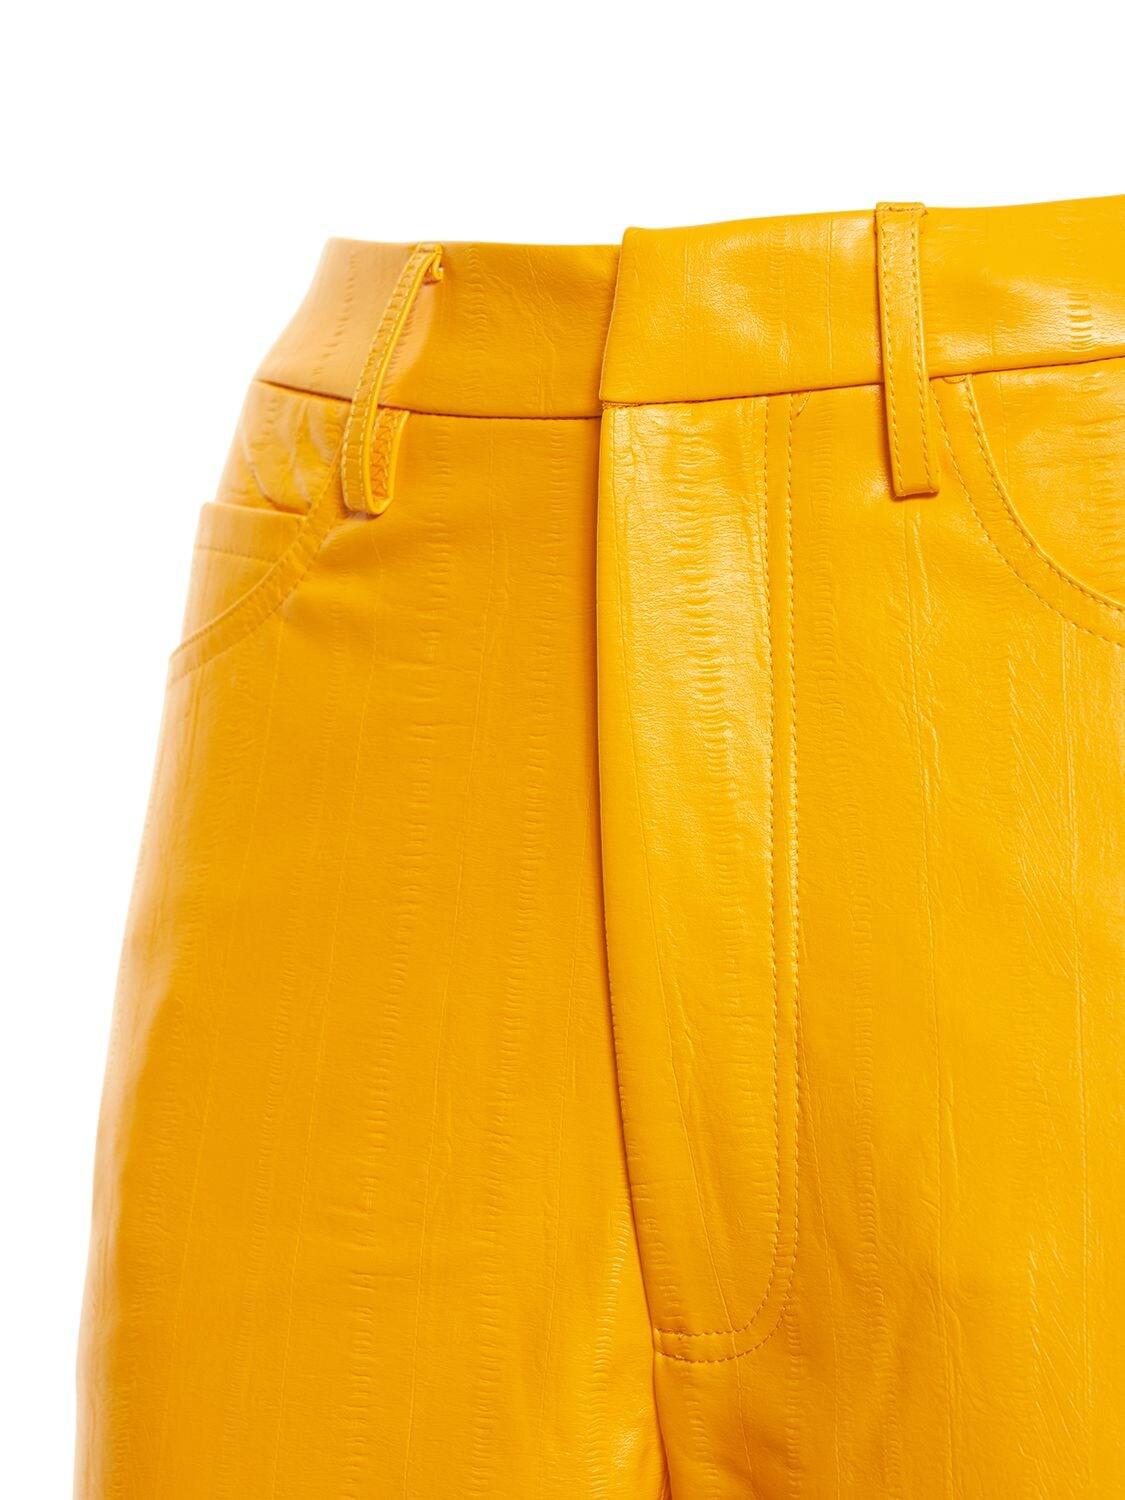 pantalones de vestir y chinos Mujer Ropa de Pantalones Blazer Fox de piel sintetica de ROTATE BIRGER CHRISTENSEN de color Amarillo 